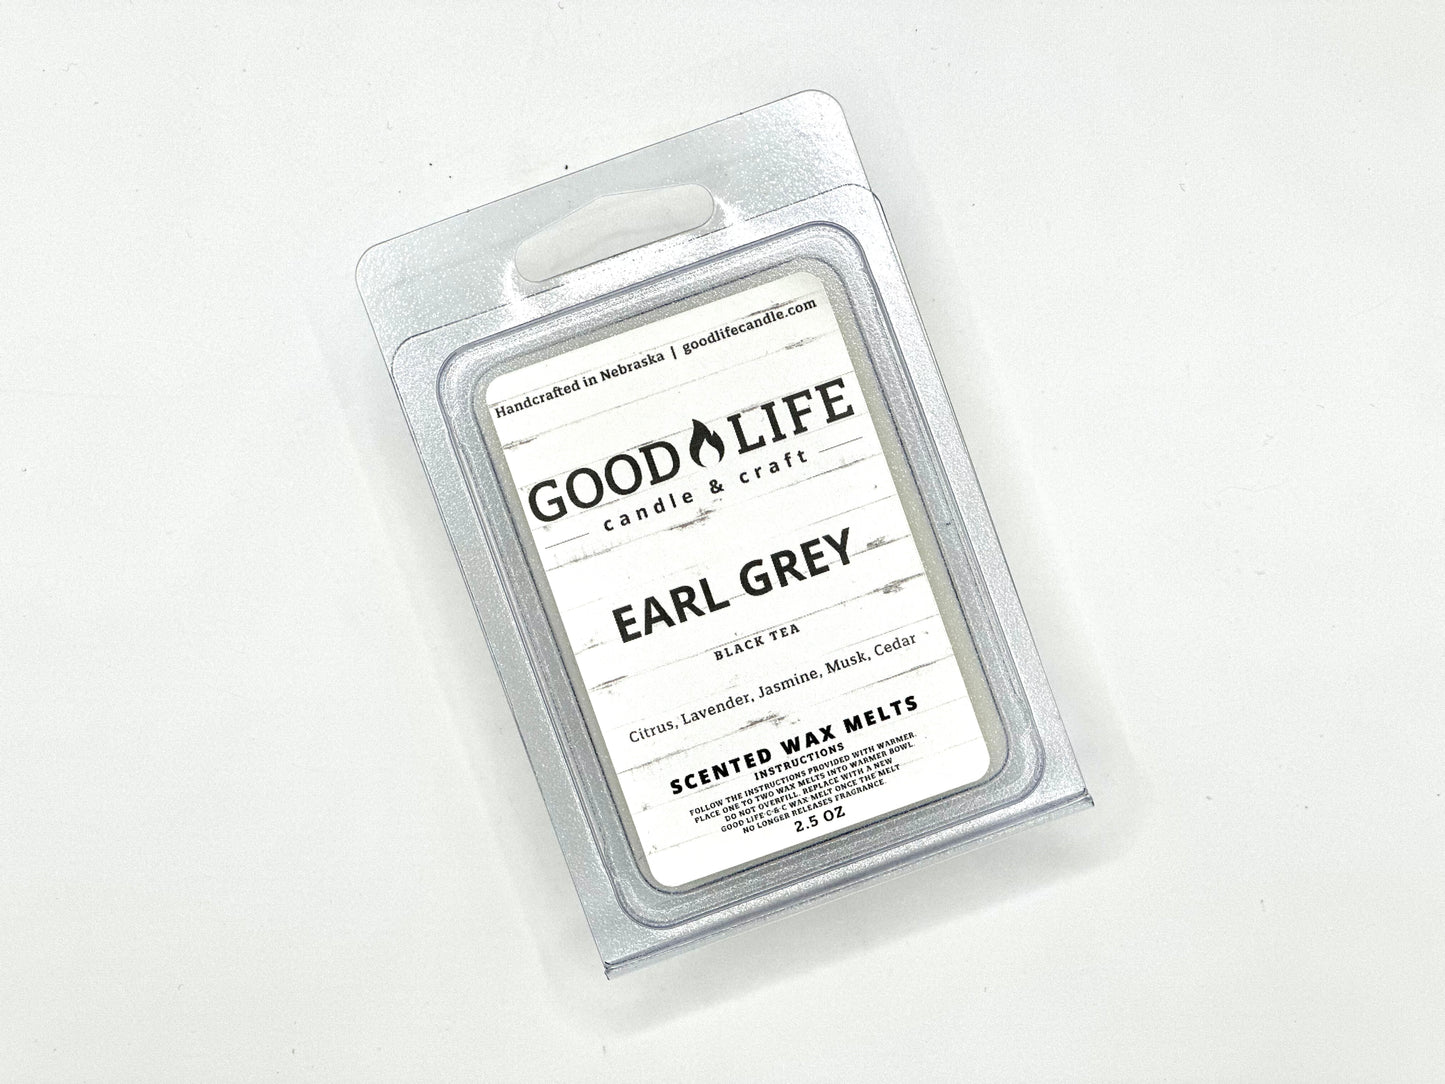 Earl Grey Black Tea 2.5 oz Wax Melt